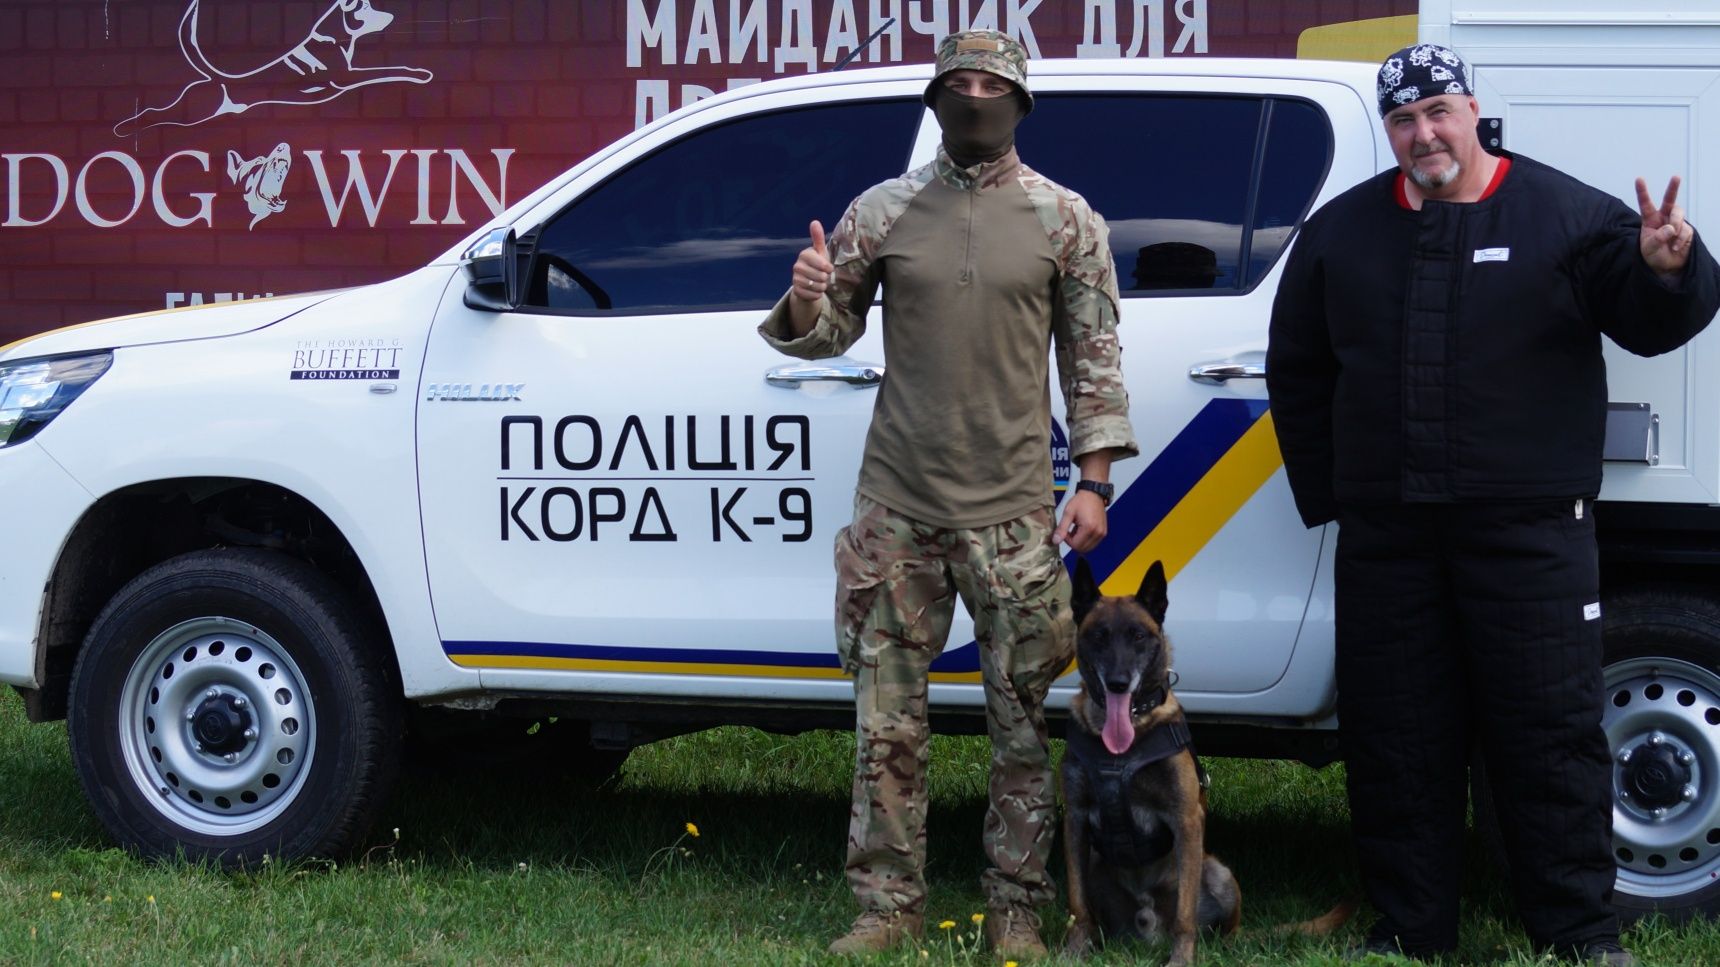 Охрана Защита Послушание Дрессировка собак Киев Кинолог инструктор